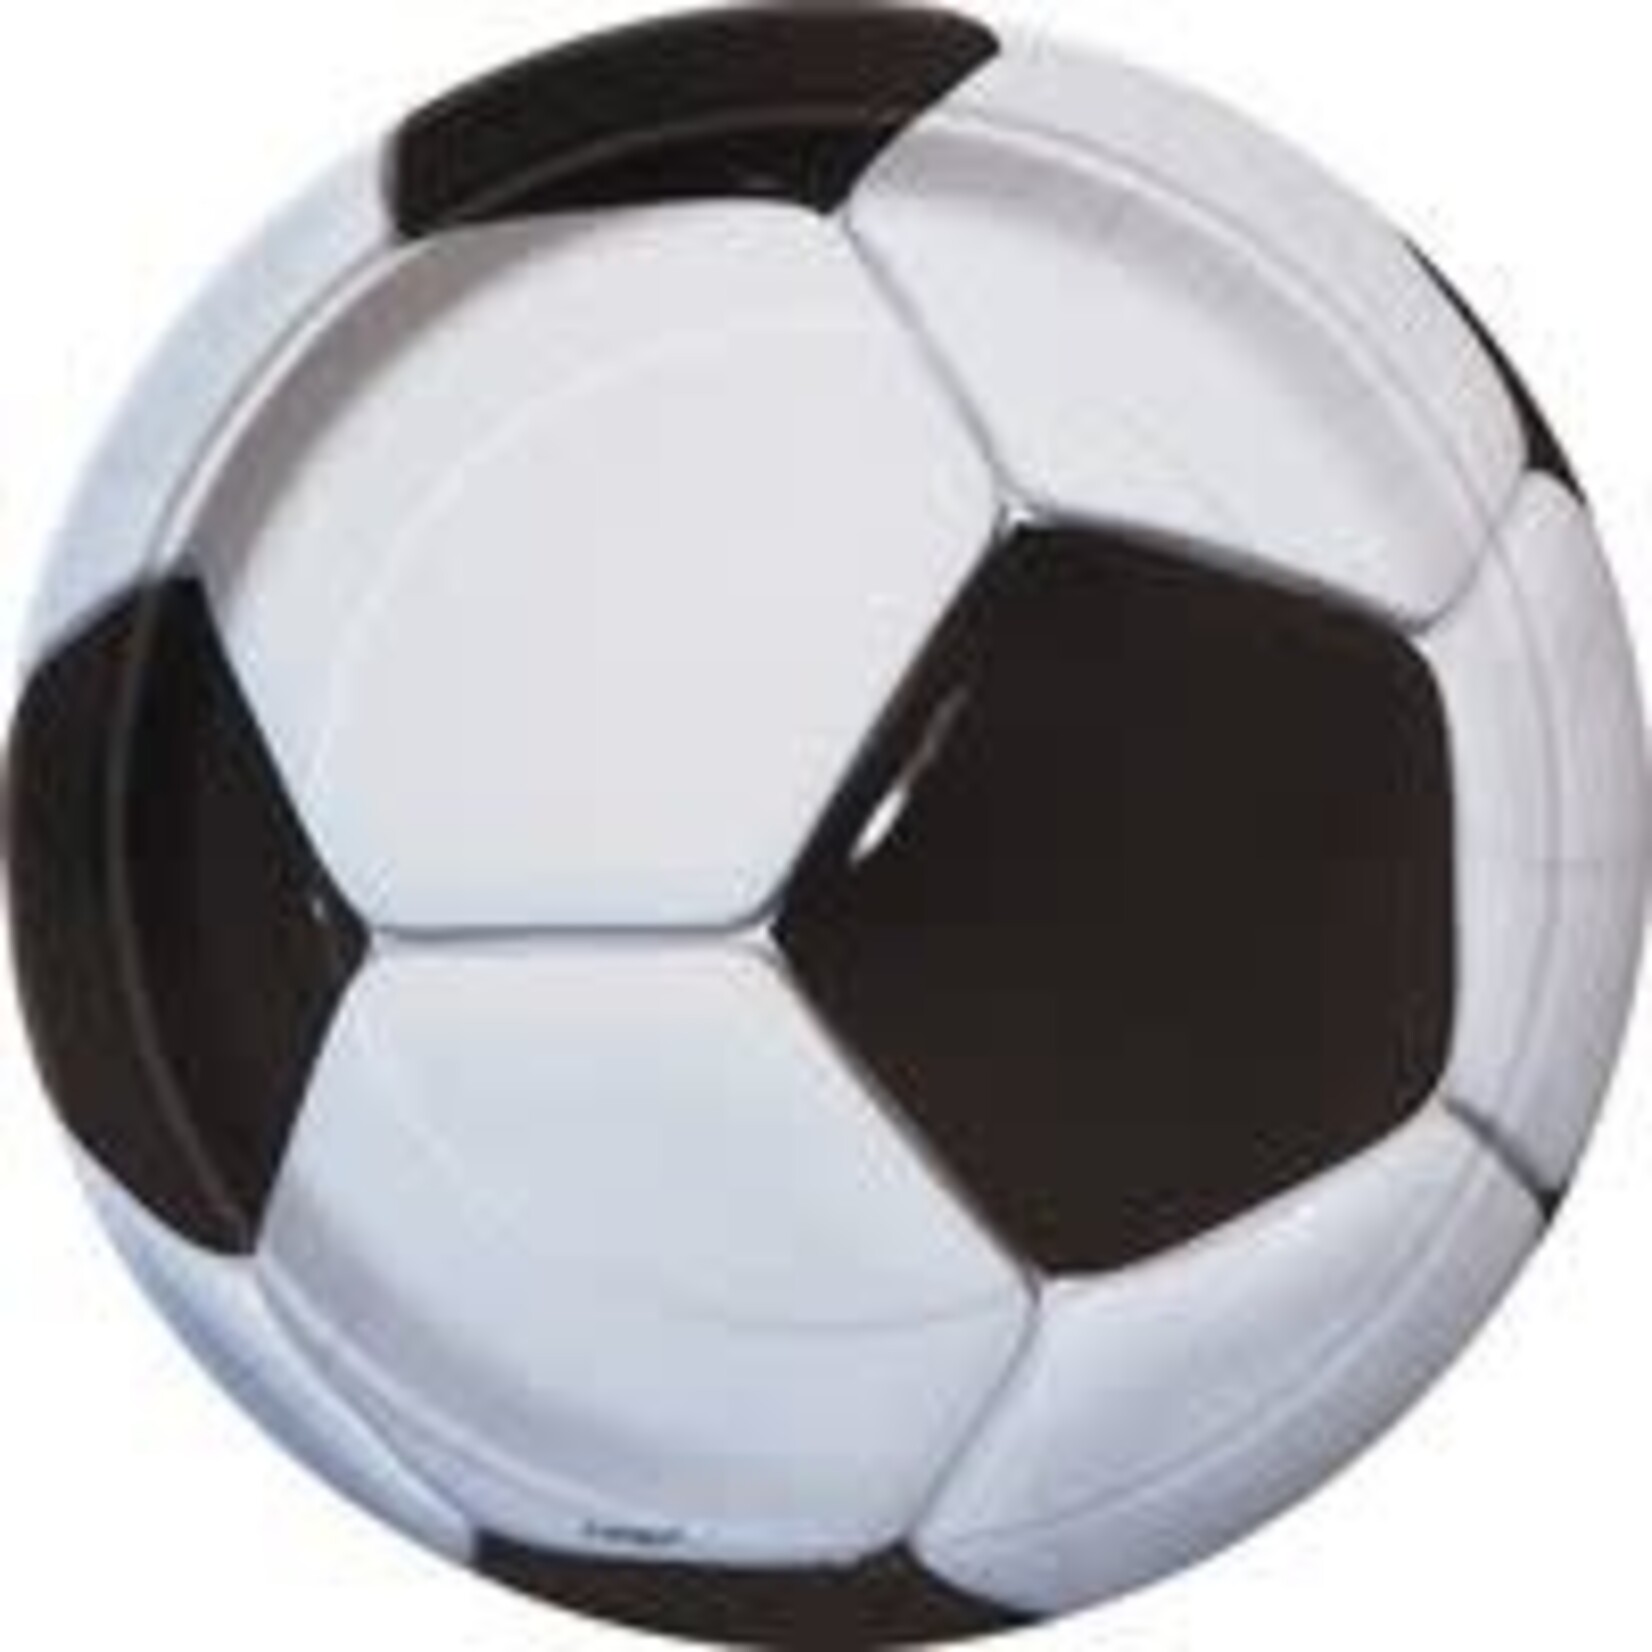 unique 7" Soccer Plates - 8ct.